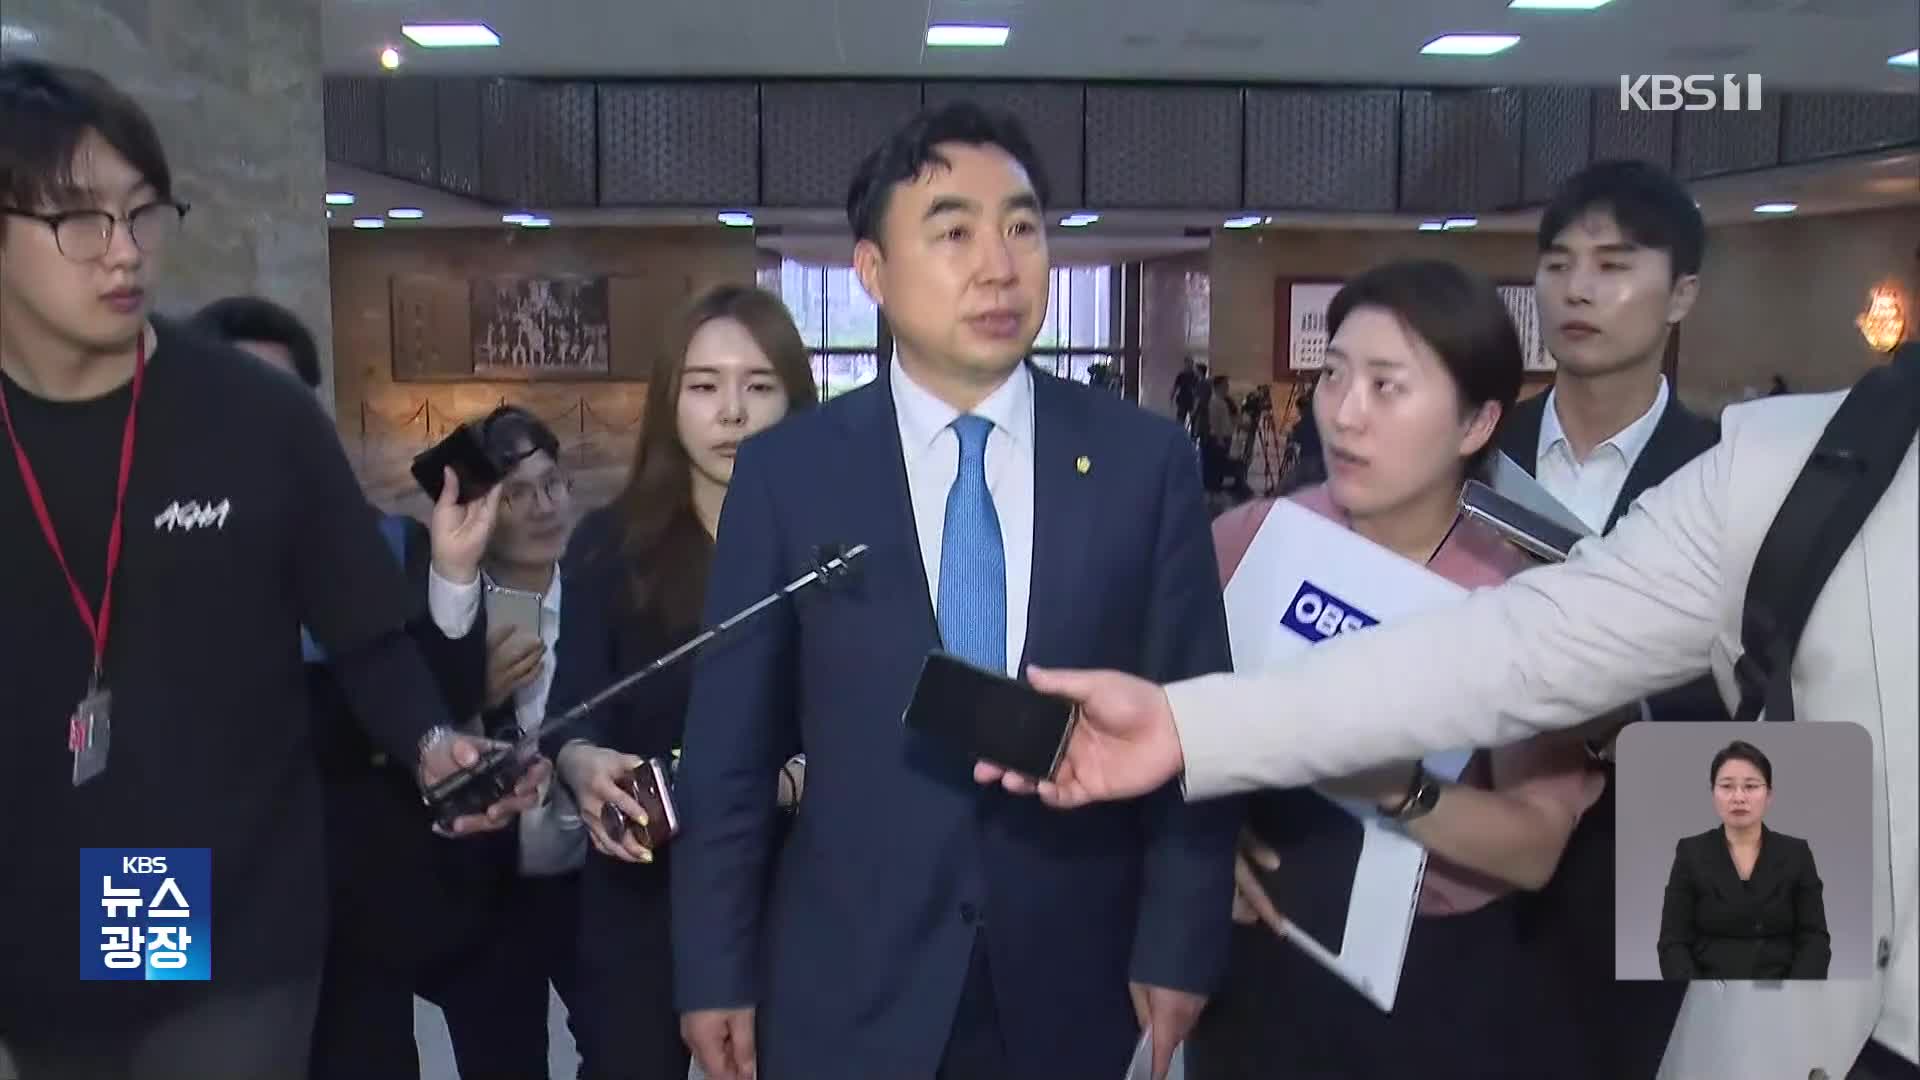 ‘민주당 돈 봉투 의혹’ 윤관석 징역 2년…“정당 민주주의 위협”